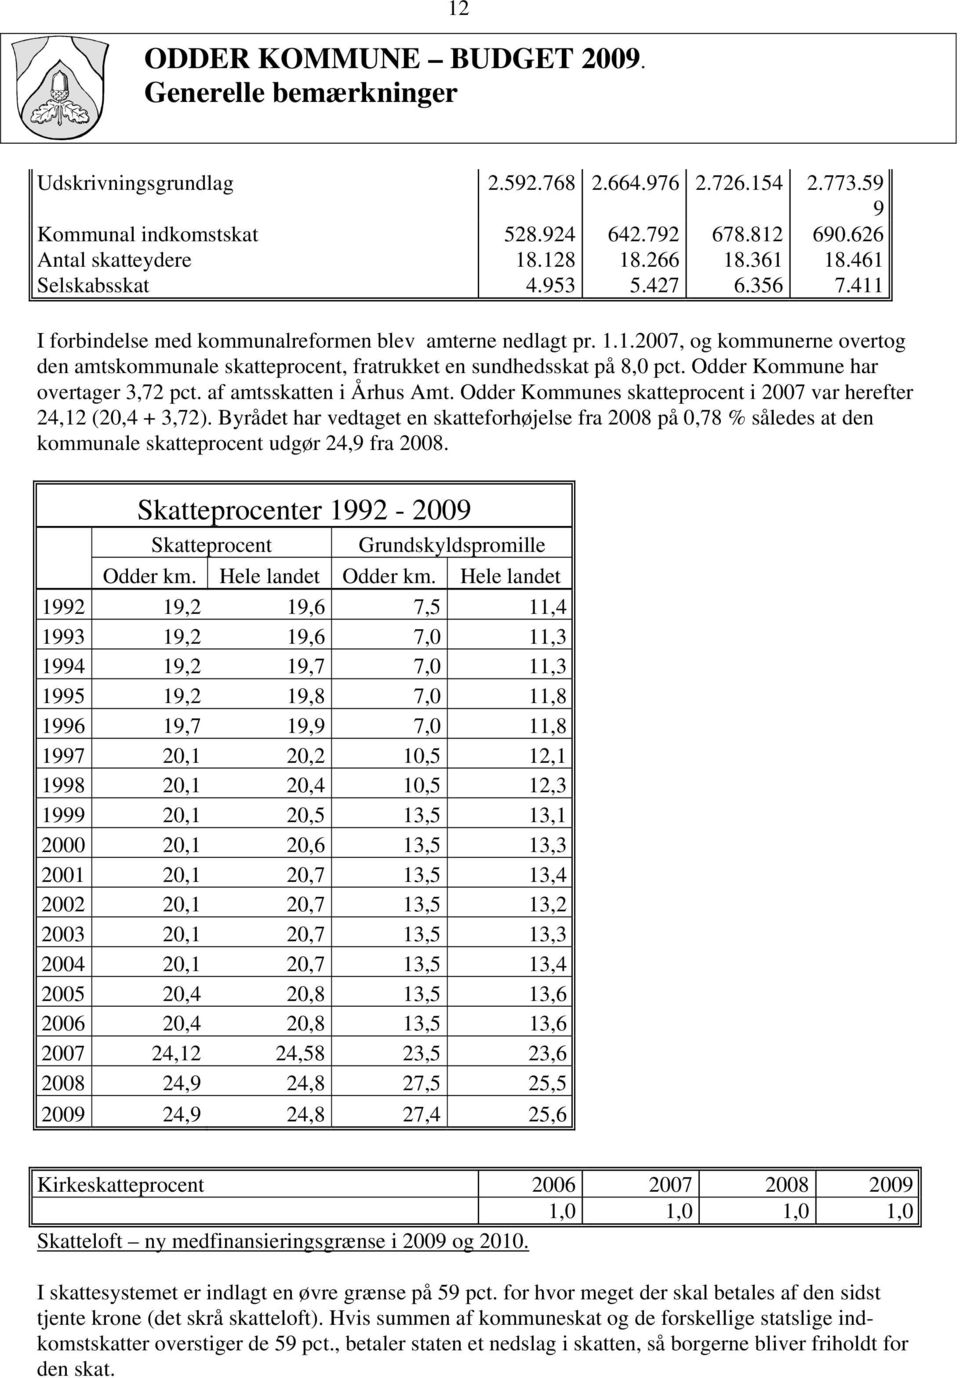 Odder Kommune har overtager 3,72 pct. af amtsskatten i Århus Amt. Odder Kommunes skatteprocent i 2007 var herefter 24,12 (20,4 + 3,72).